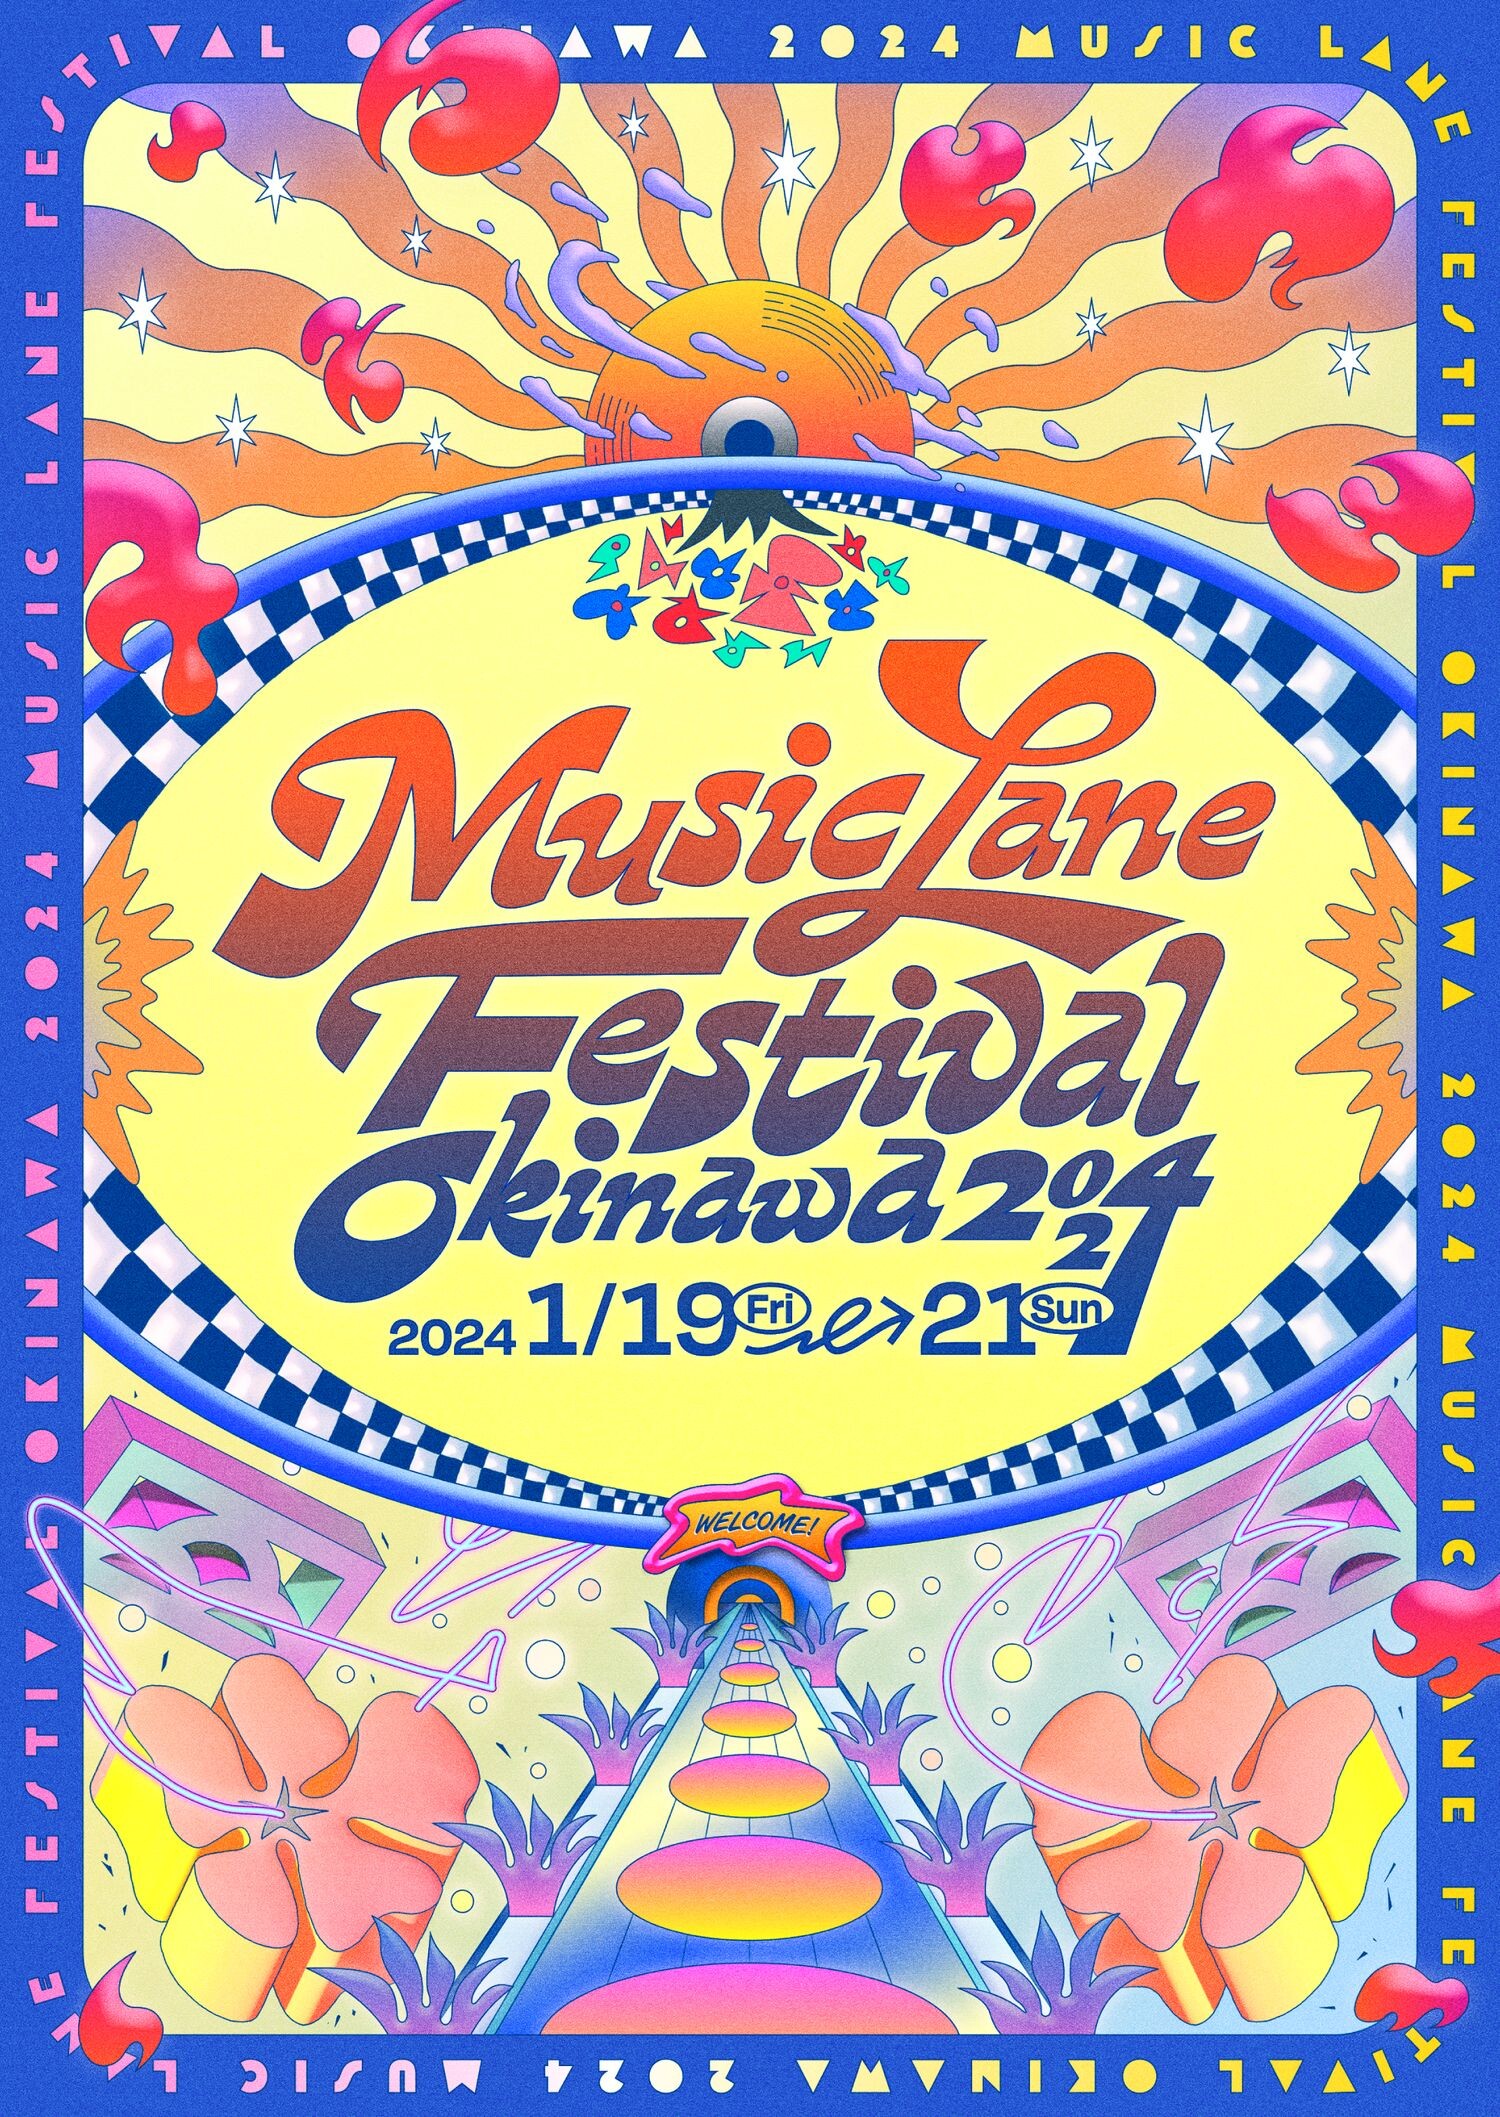 沖縄とアジアの音楽シーンを体感できる「Music Lane Festival Okinawa 2024」